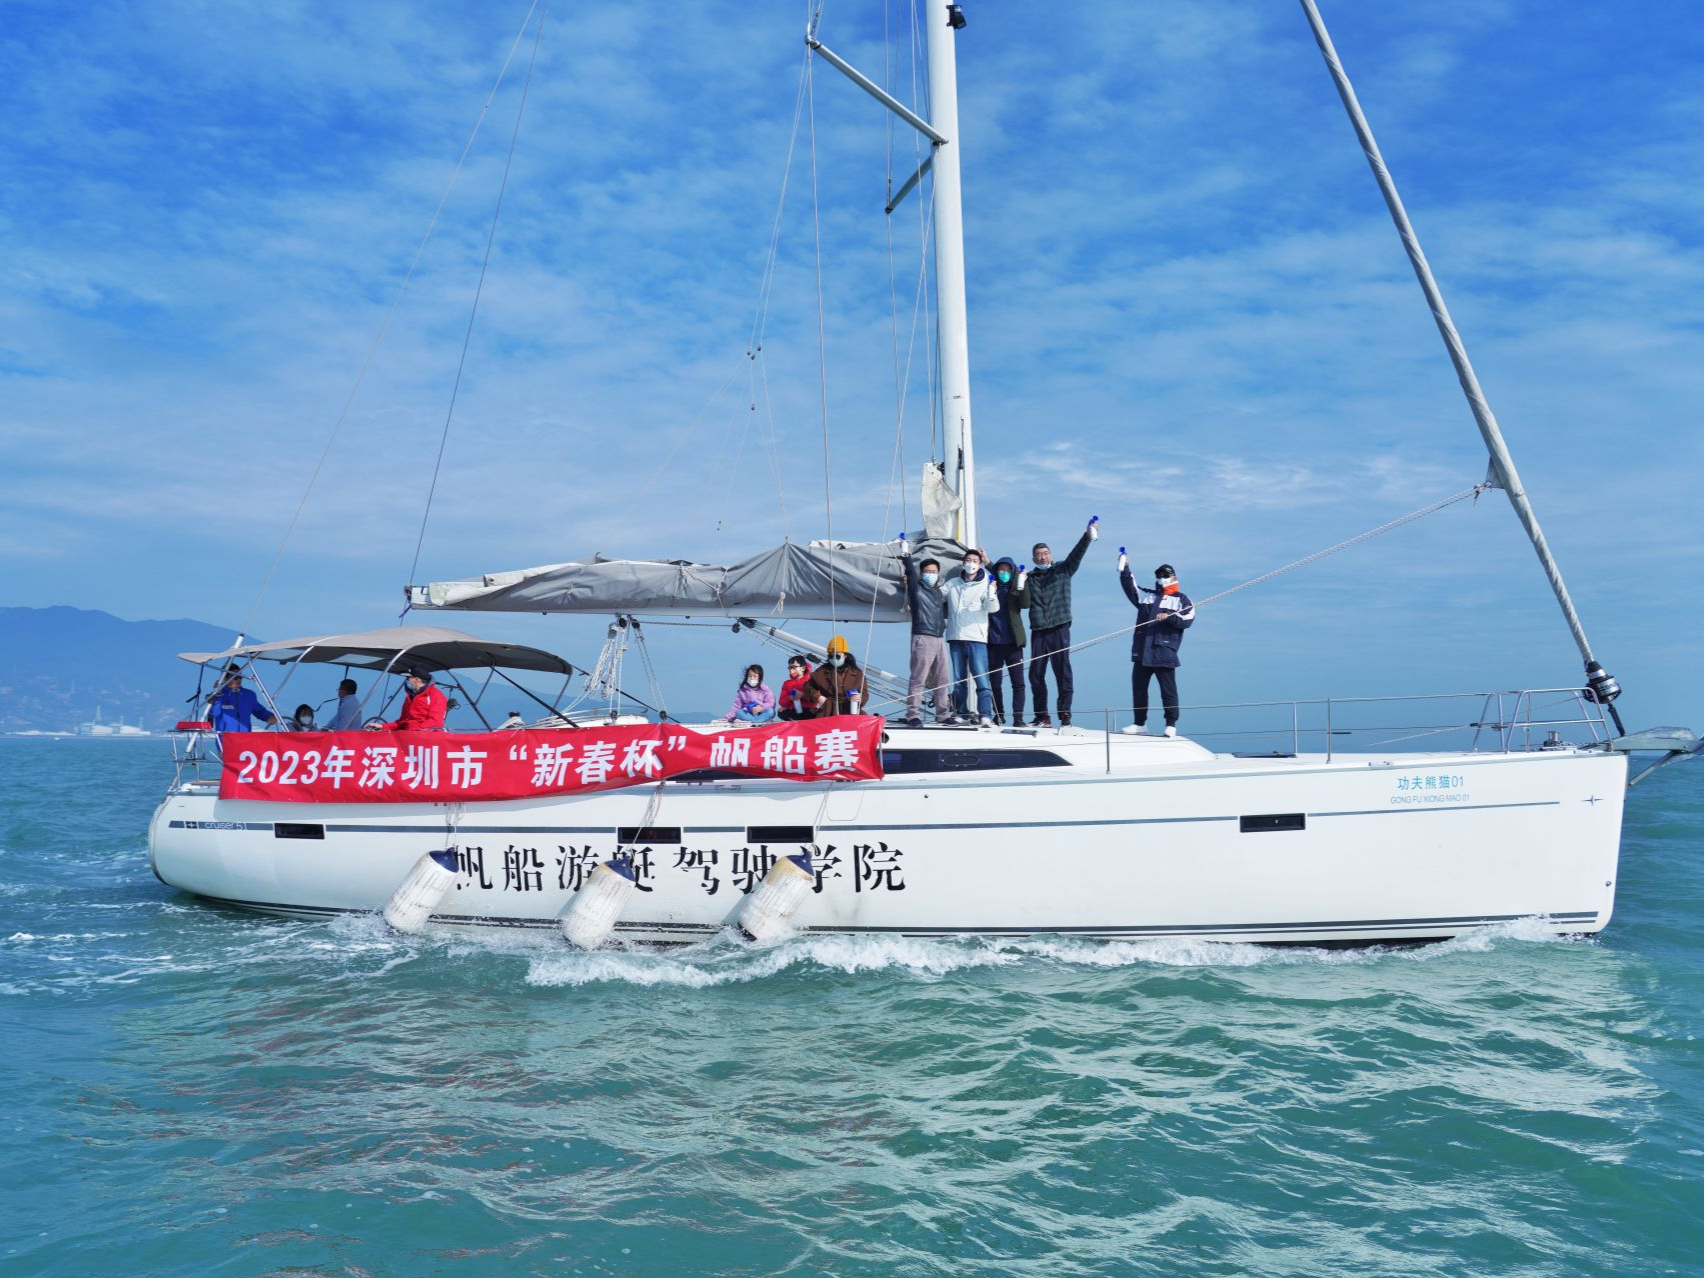 2023新年扬帆起航 深圳市“新春杯”帆船赛顺利举行